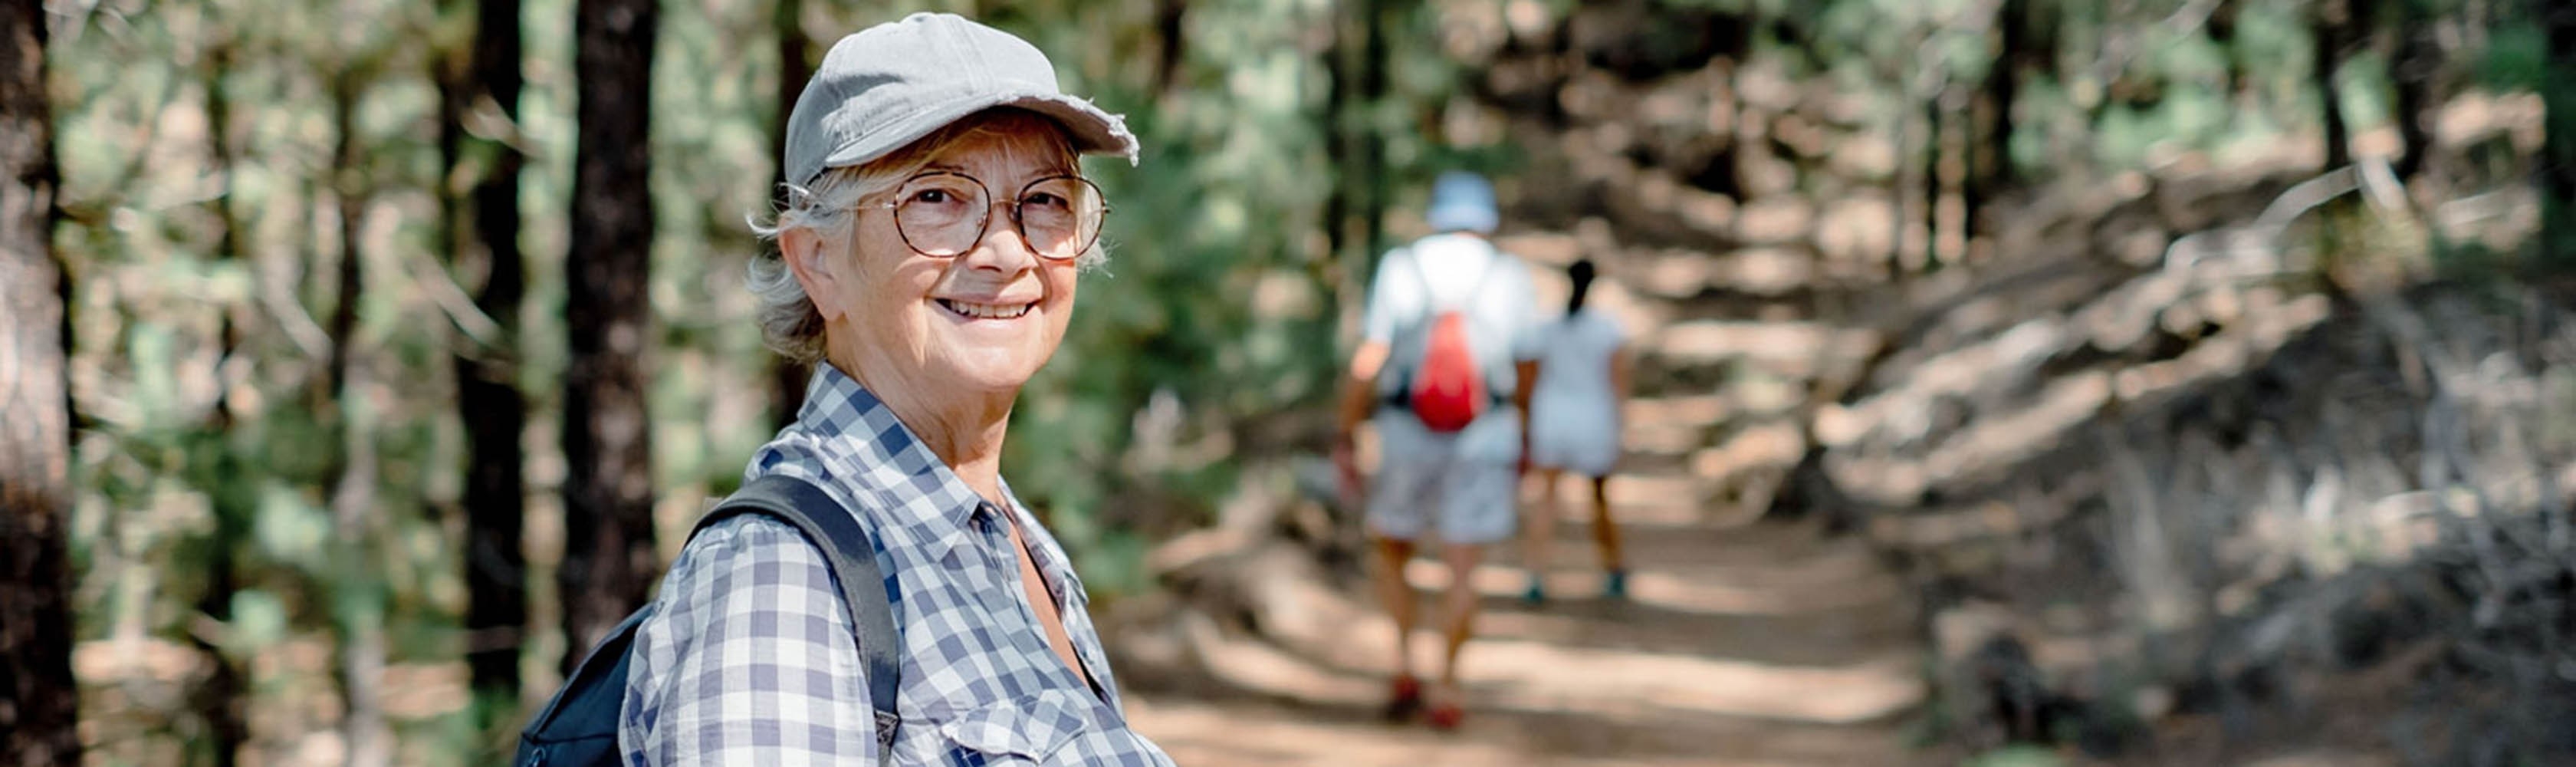 Eine ältere Frau geniesst eine Wanderung mit Freunden im Wald